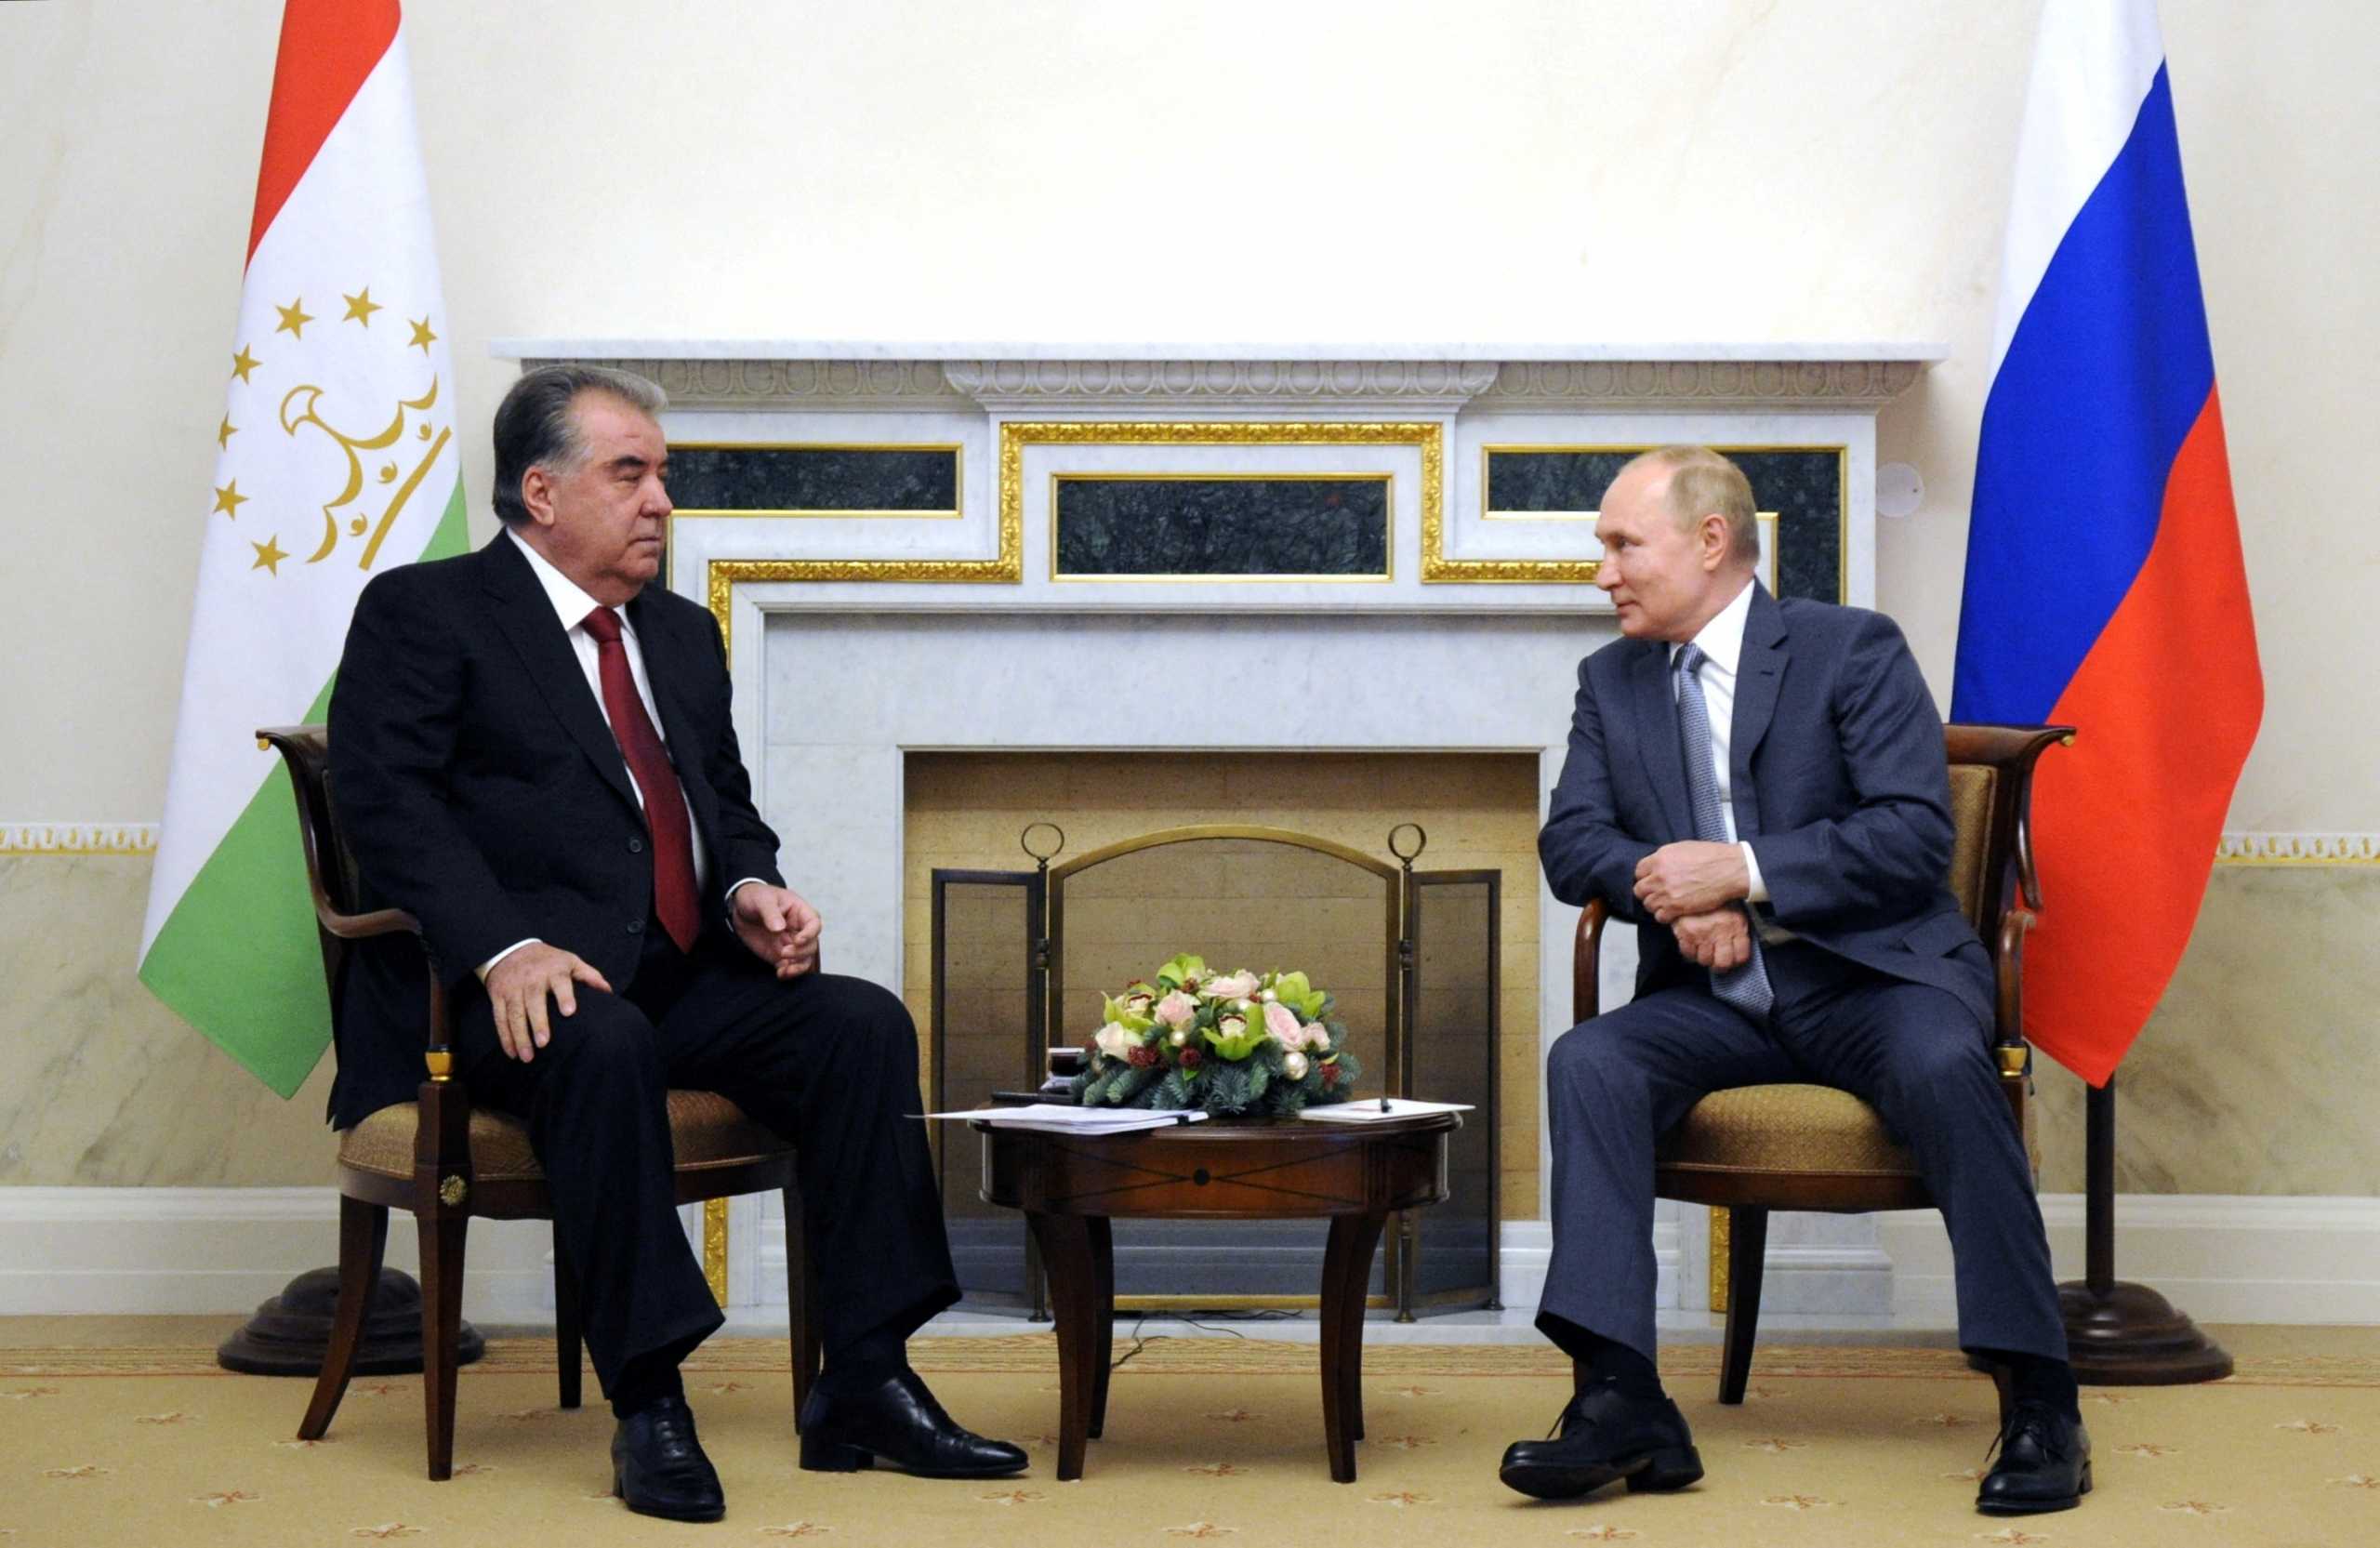 Ο Πούτιν ανησυχεί για την ασφάλεια του Τατζικιστάν και ενισχύει τη ρωσική στρατιωτική βάση στη χώρα